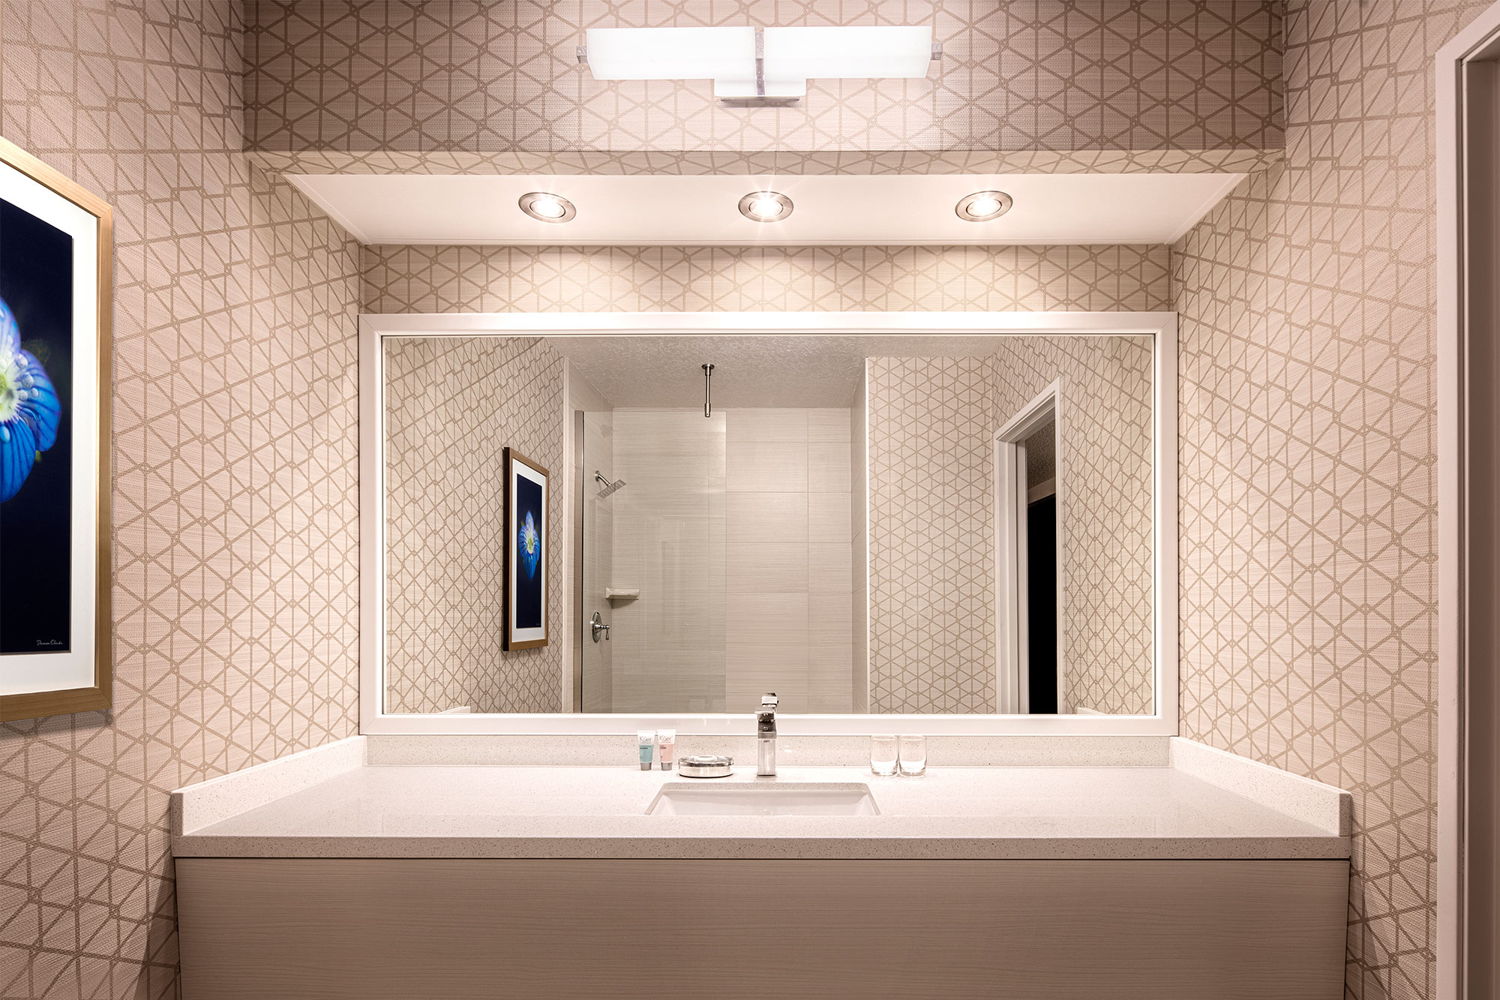 Het nieuwe design van de badkamers in het Luxor © MGM Resorts